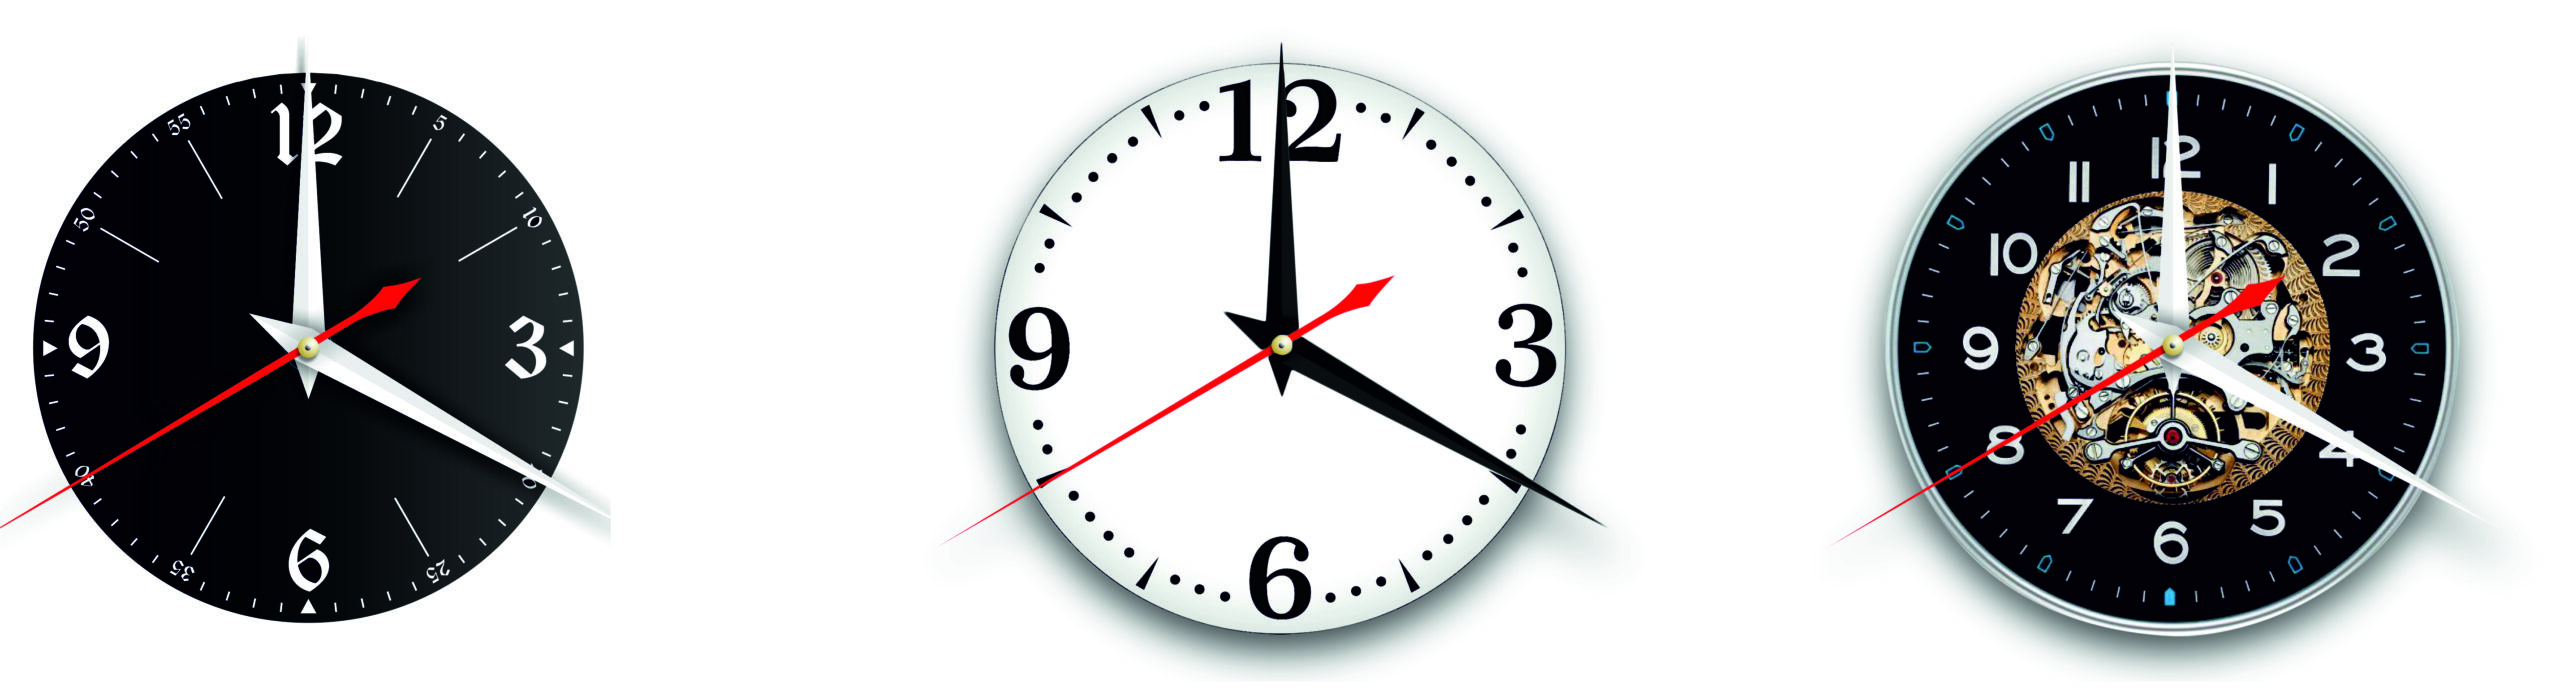 Кипелов - 1. Дизайнерские часы из настоящей виниловой пластинки